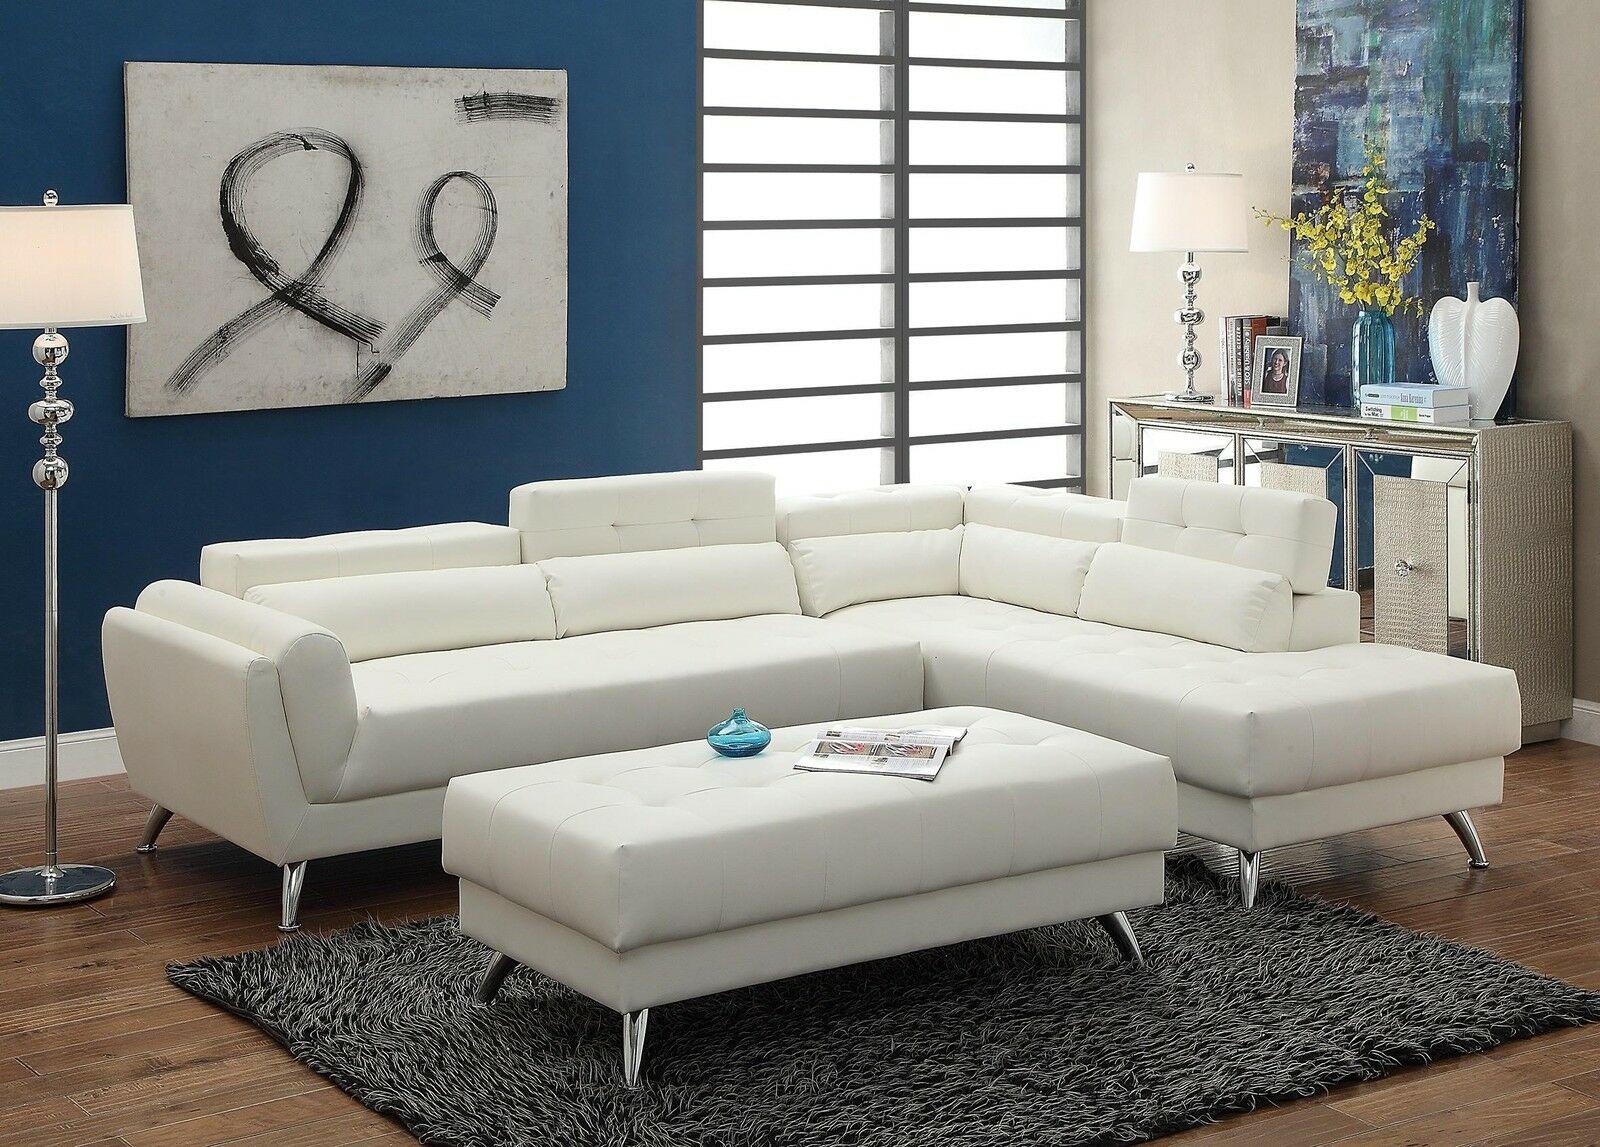 

    
Poundex F6977 White Bonded Leather Sectional Ottoman Sofa Set
